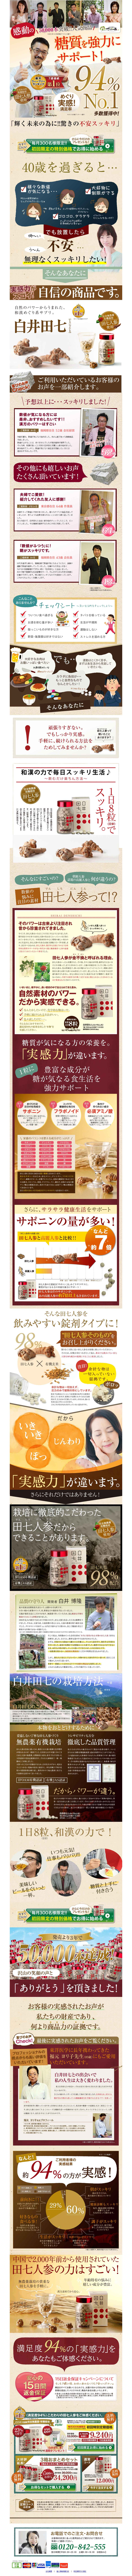 感動の50,000本突破!!人気商品 糖質を強力にサポート!|白井田七